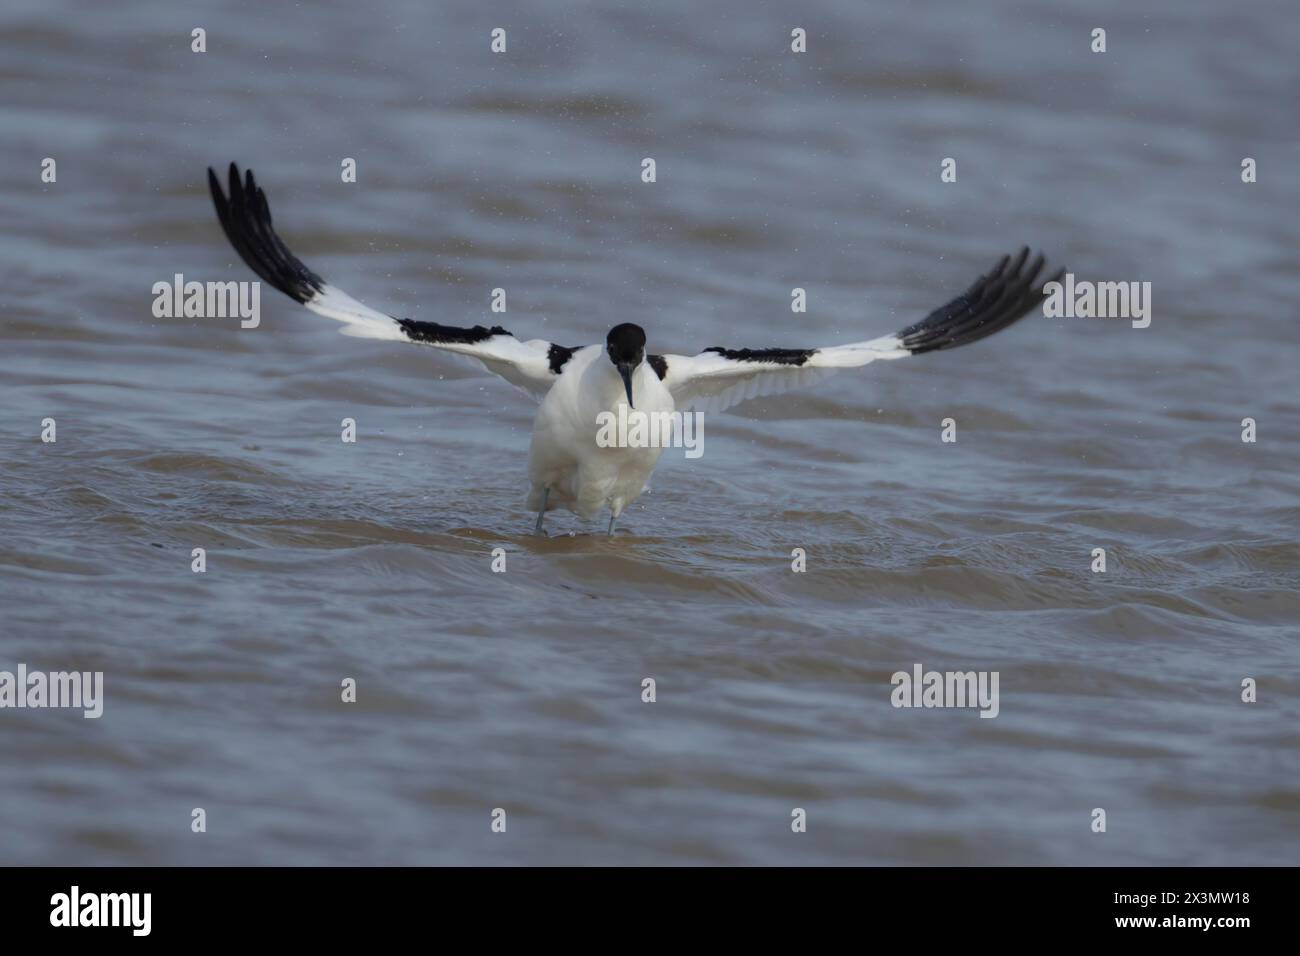 Oiseau adulte pied avocet (Recurvirostra avosetta) battant ses ailes dans un lagon, Angleterre, Royaume-Uni Banque D'Images